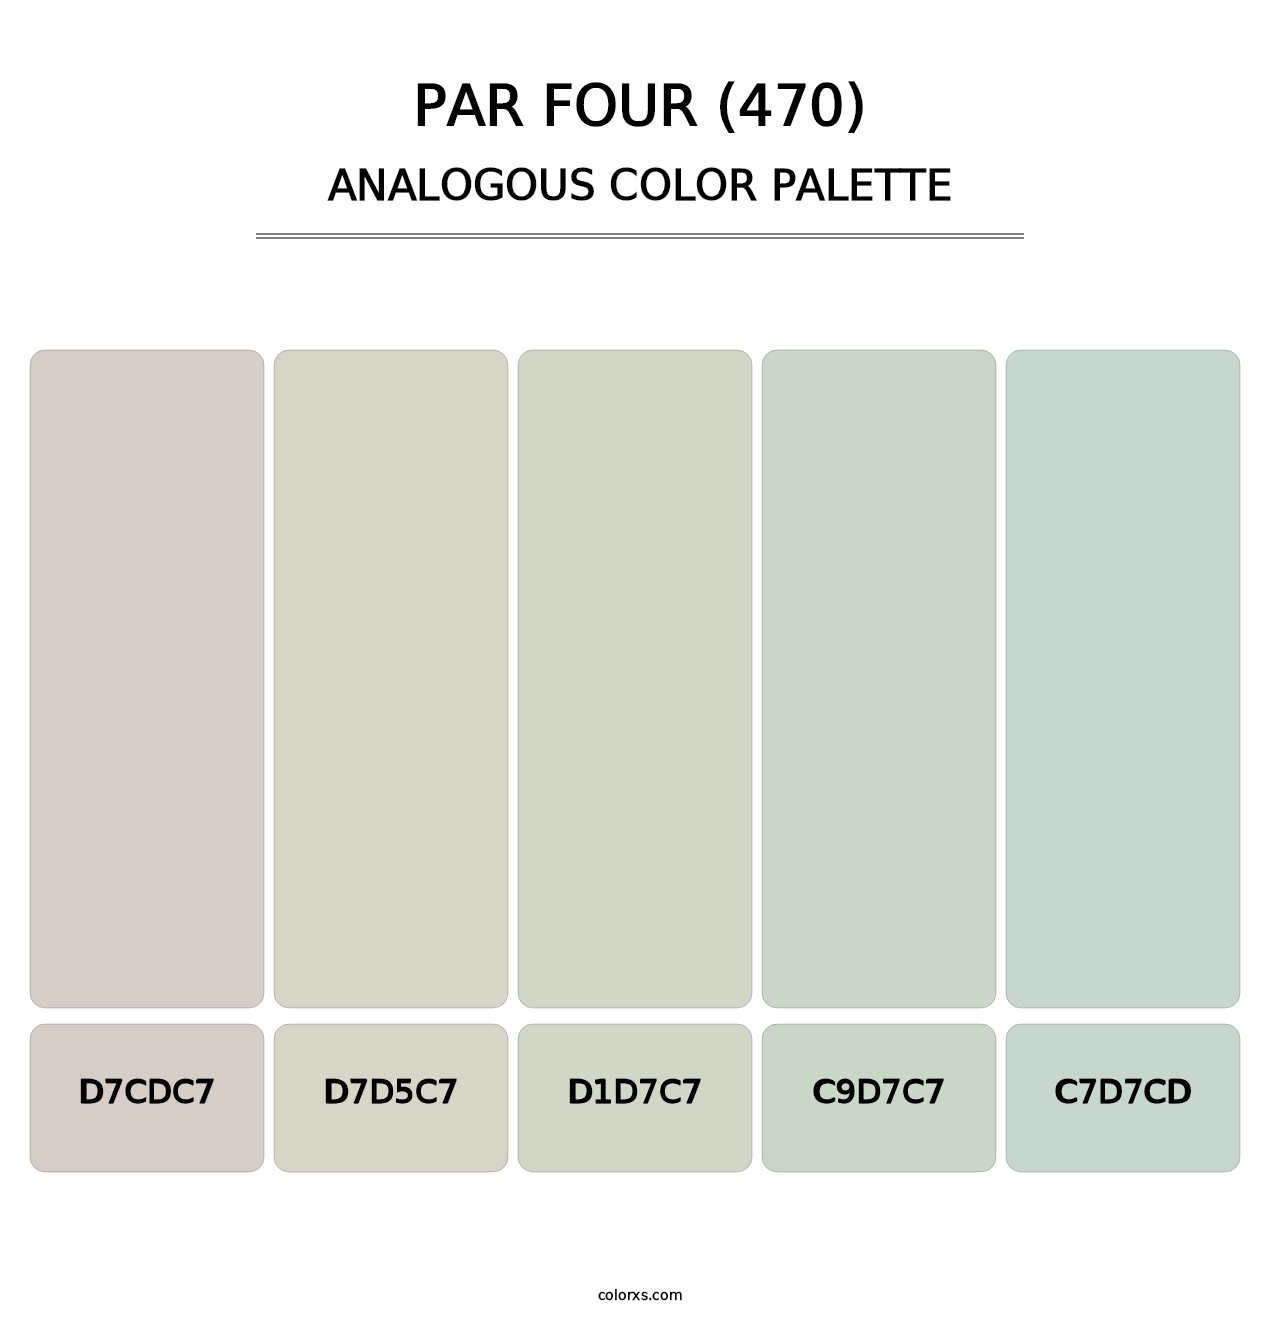 Par Four (470) - Analogous Color Palette